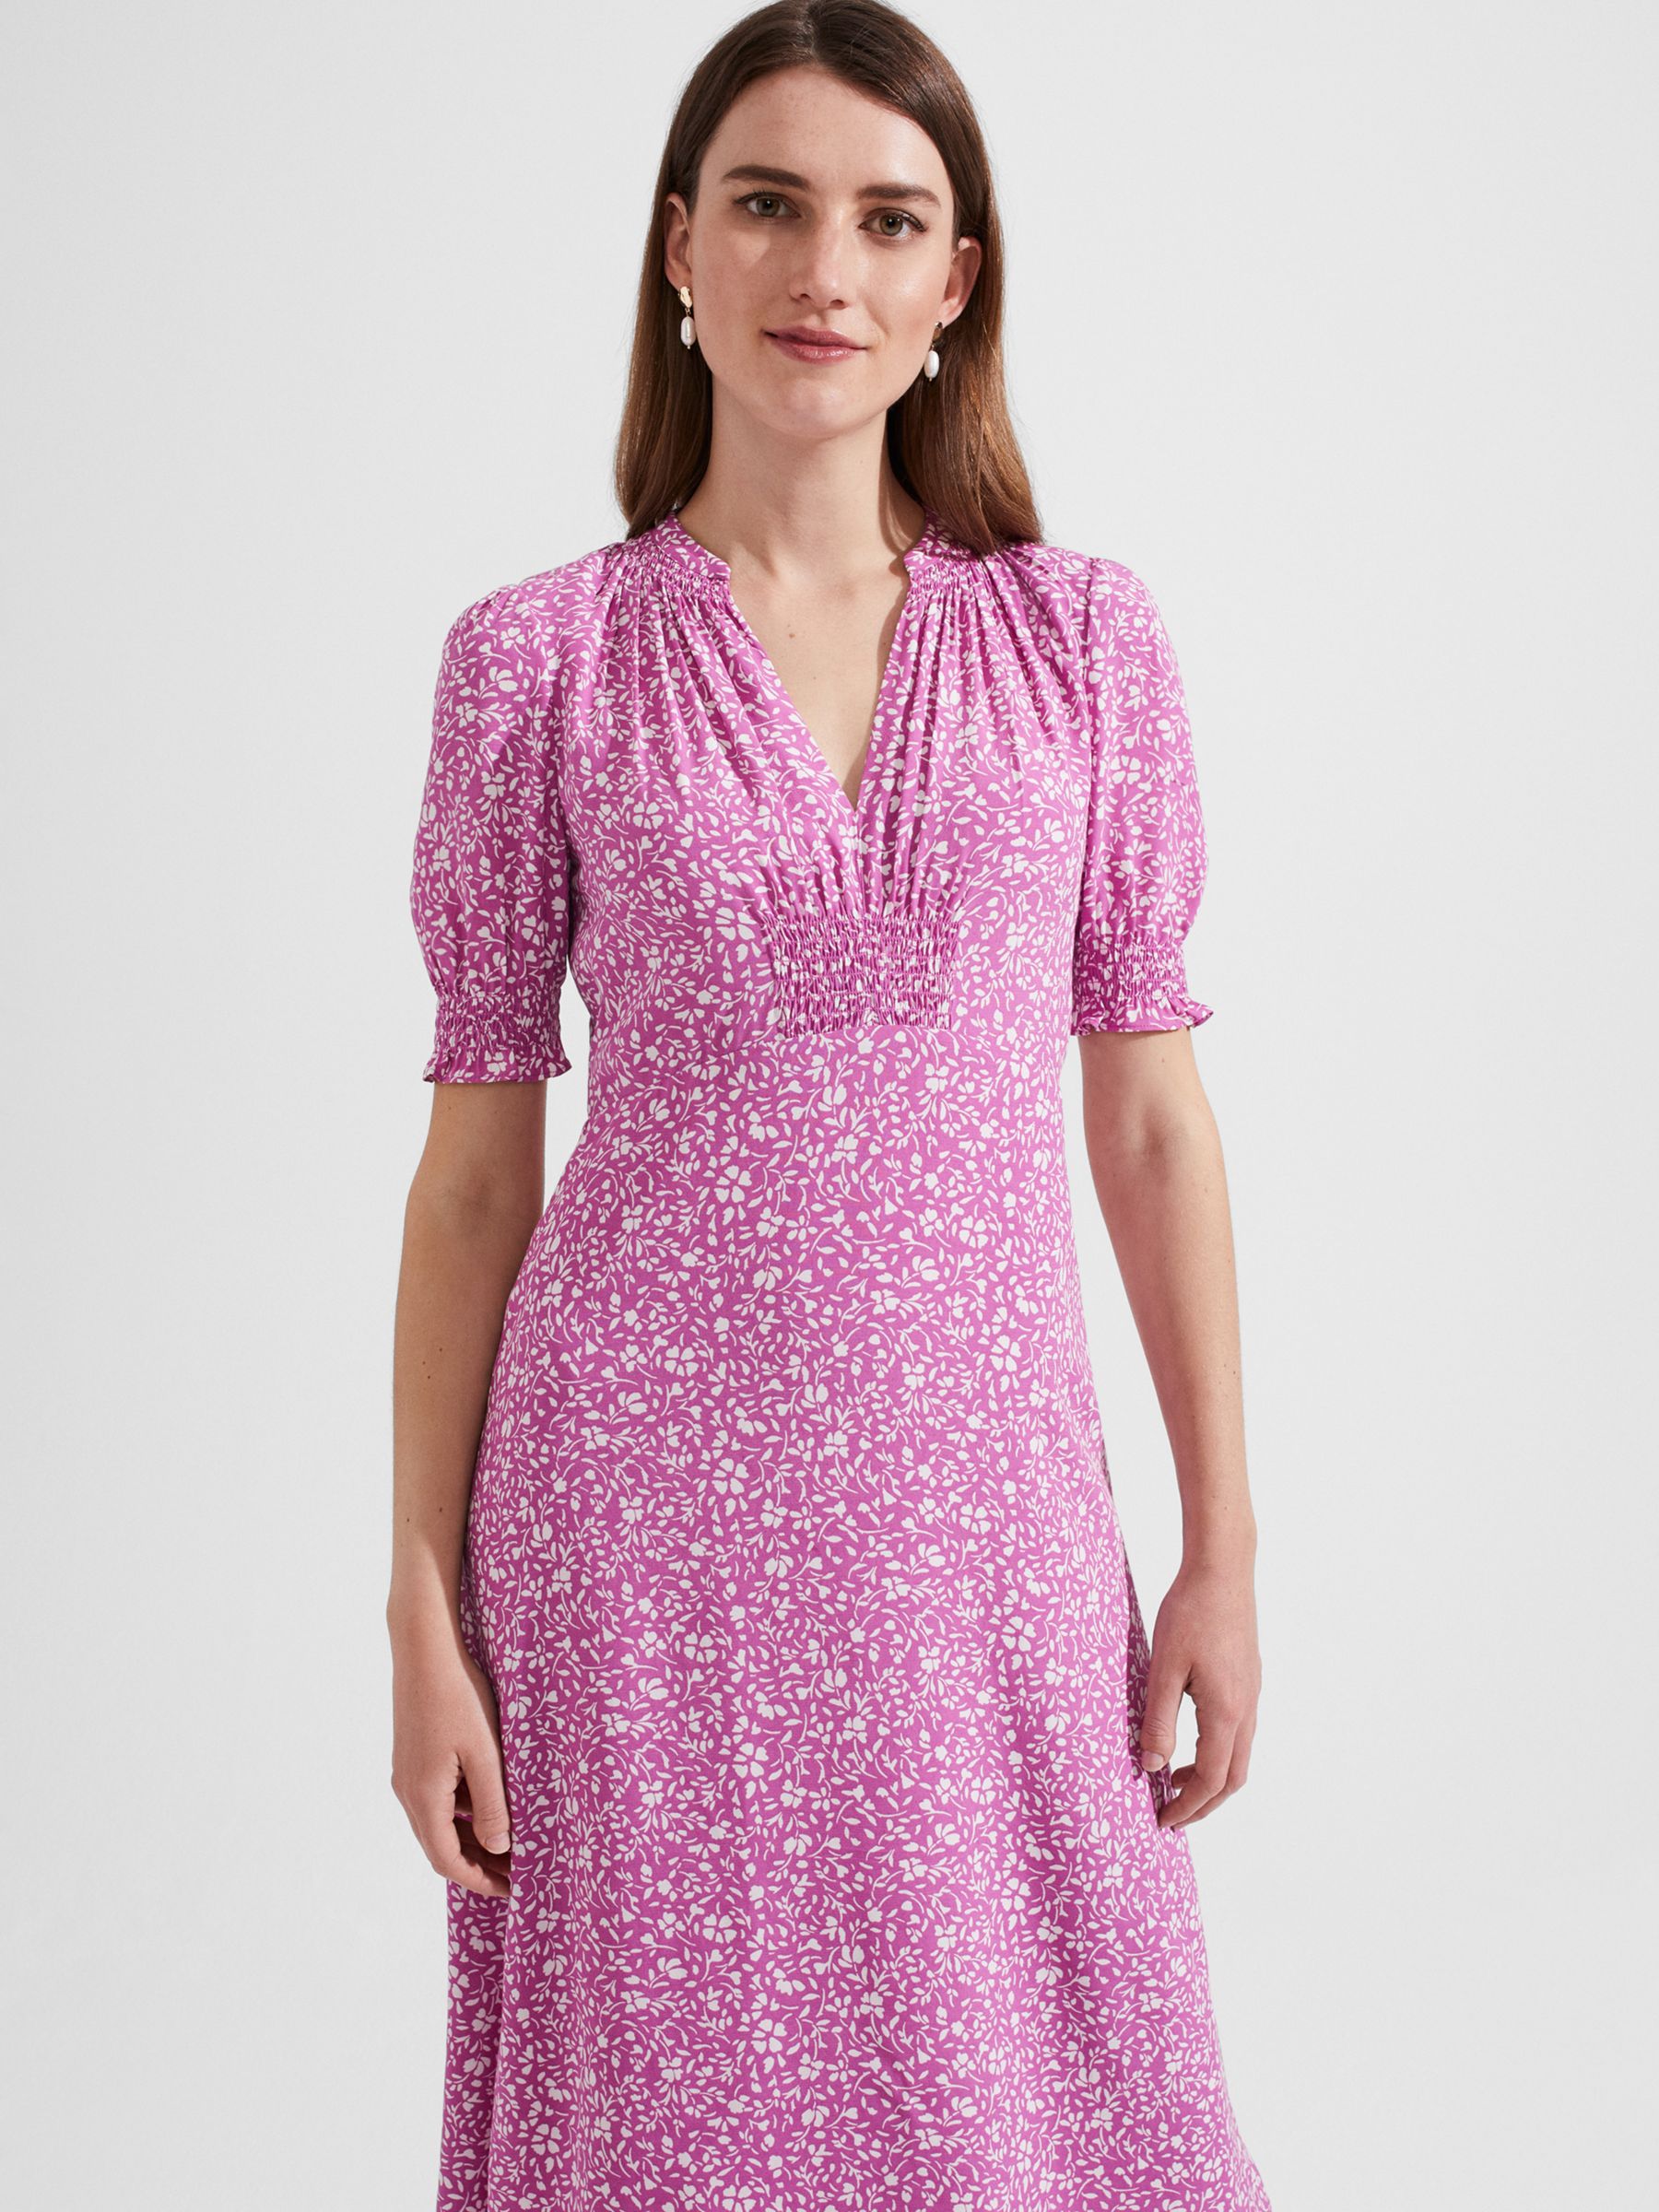 Hobbs Tullia Floral Midi Dress, Pink/Ivory, 8